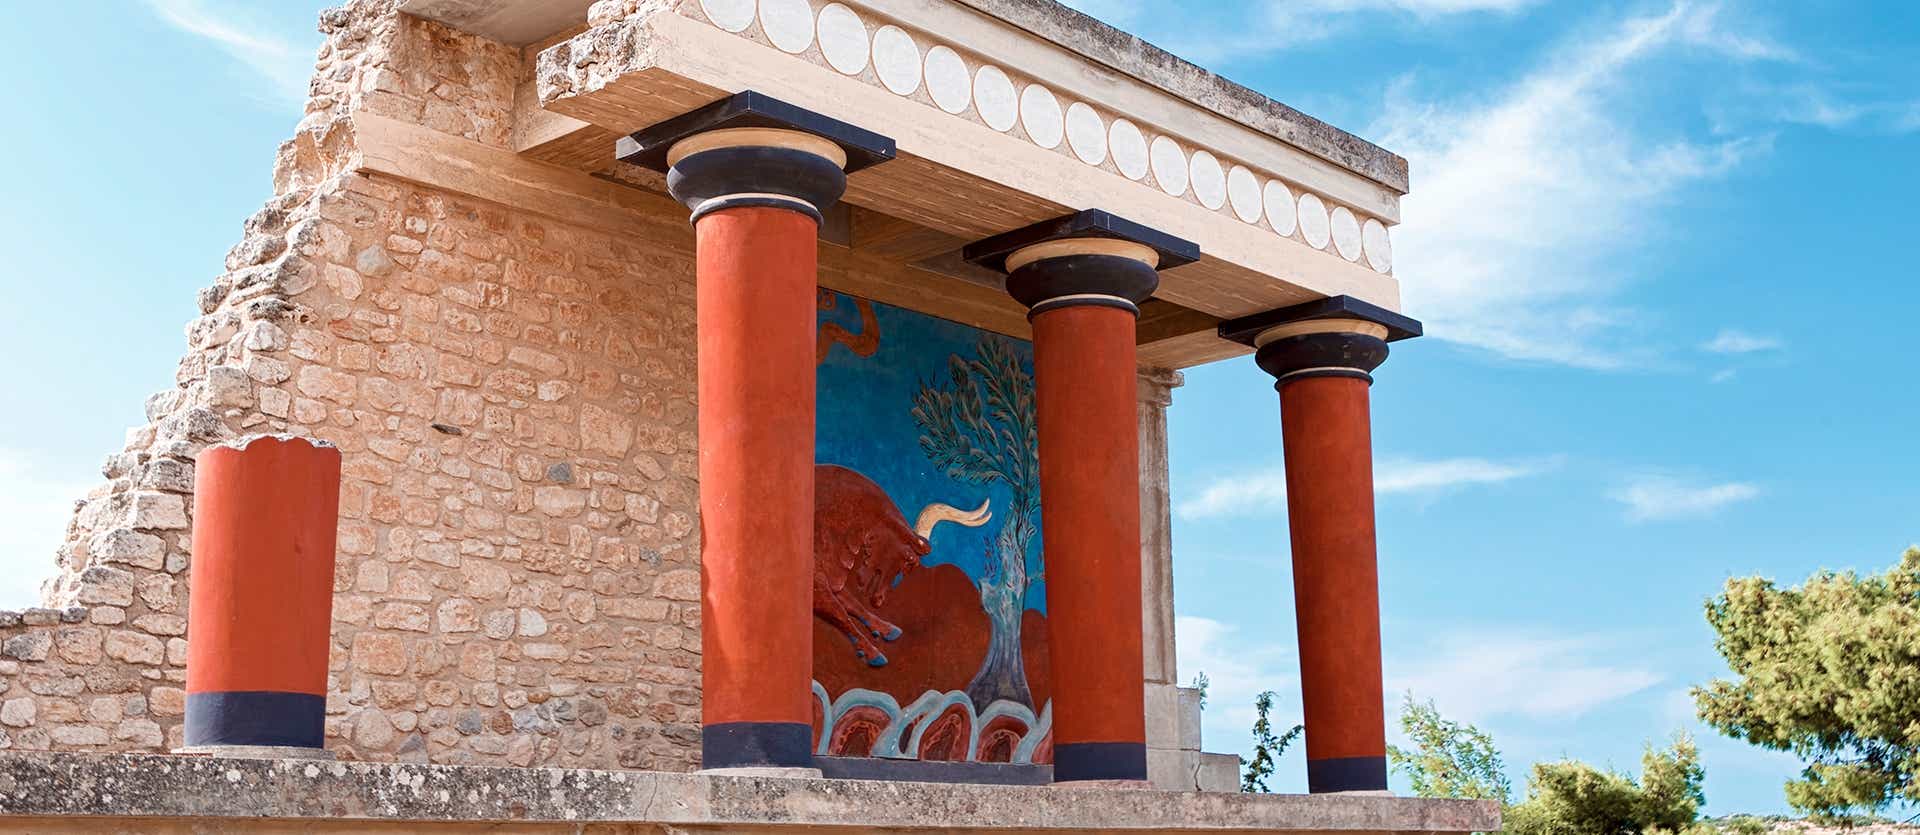 Palacio de Knossos <span class="iconos separador"></span> Creta